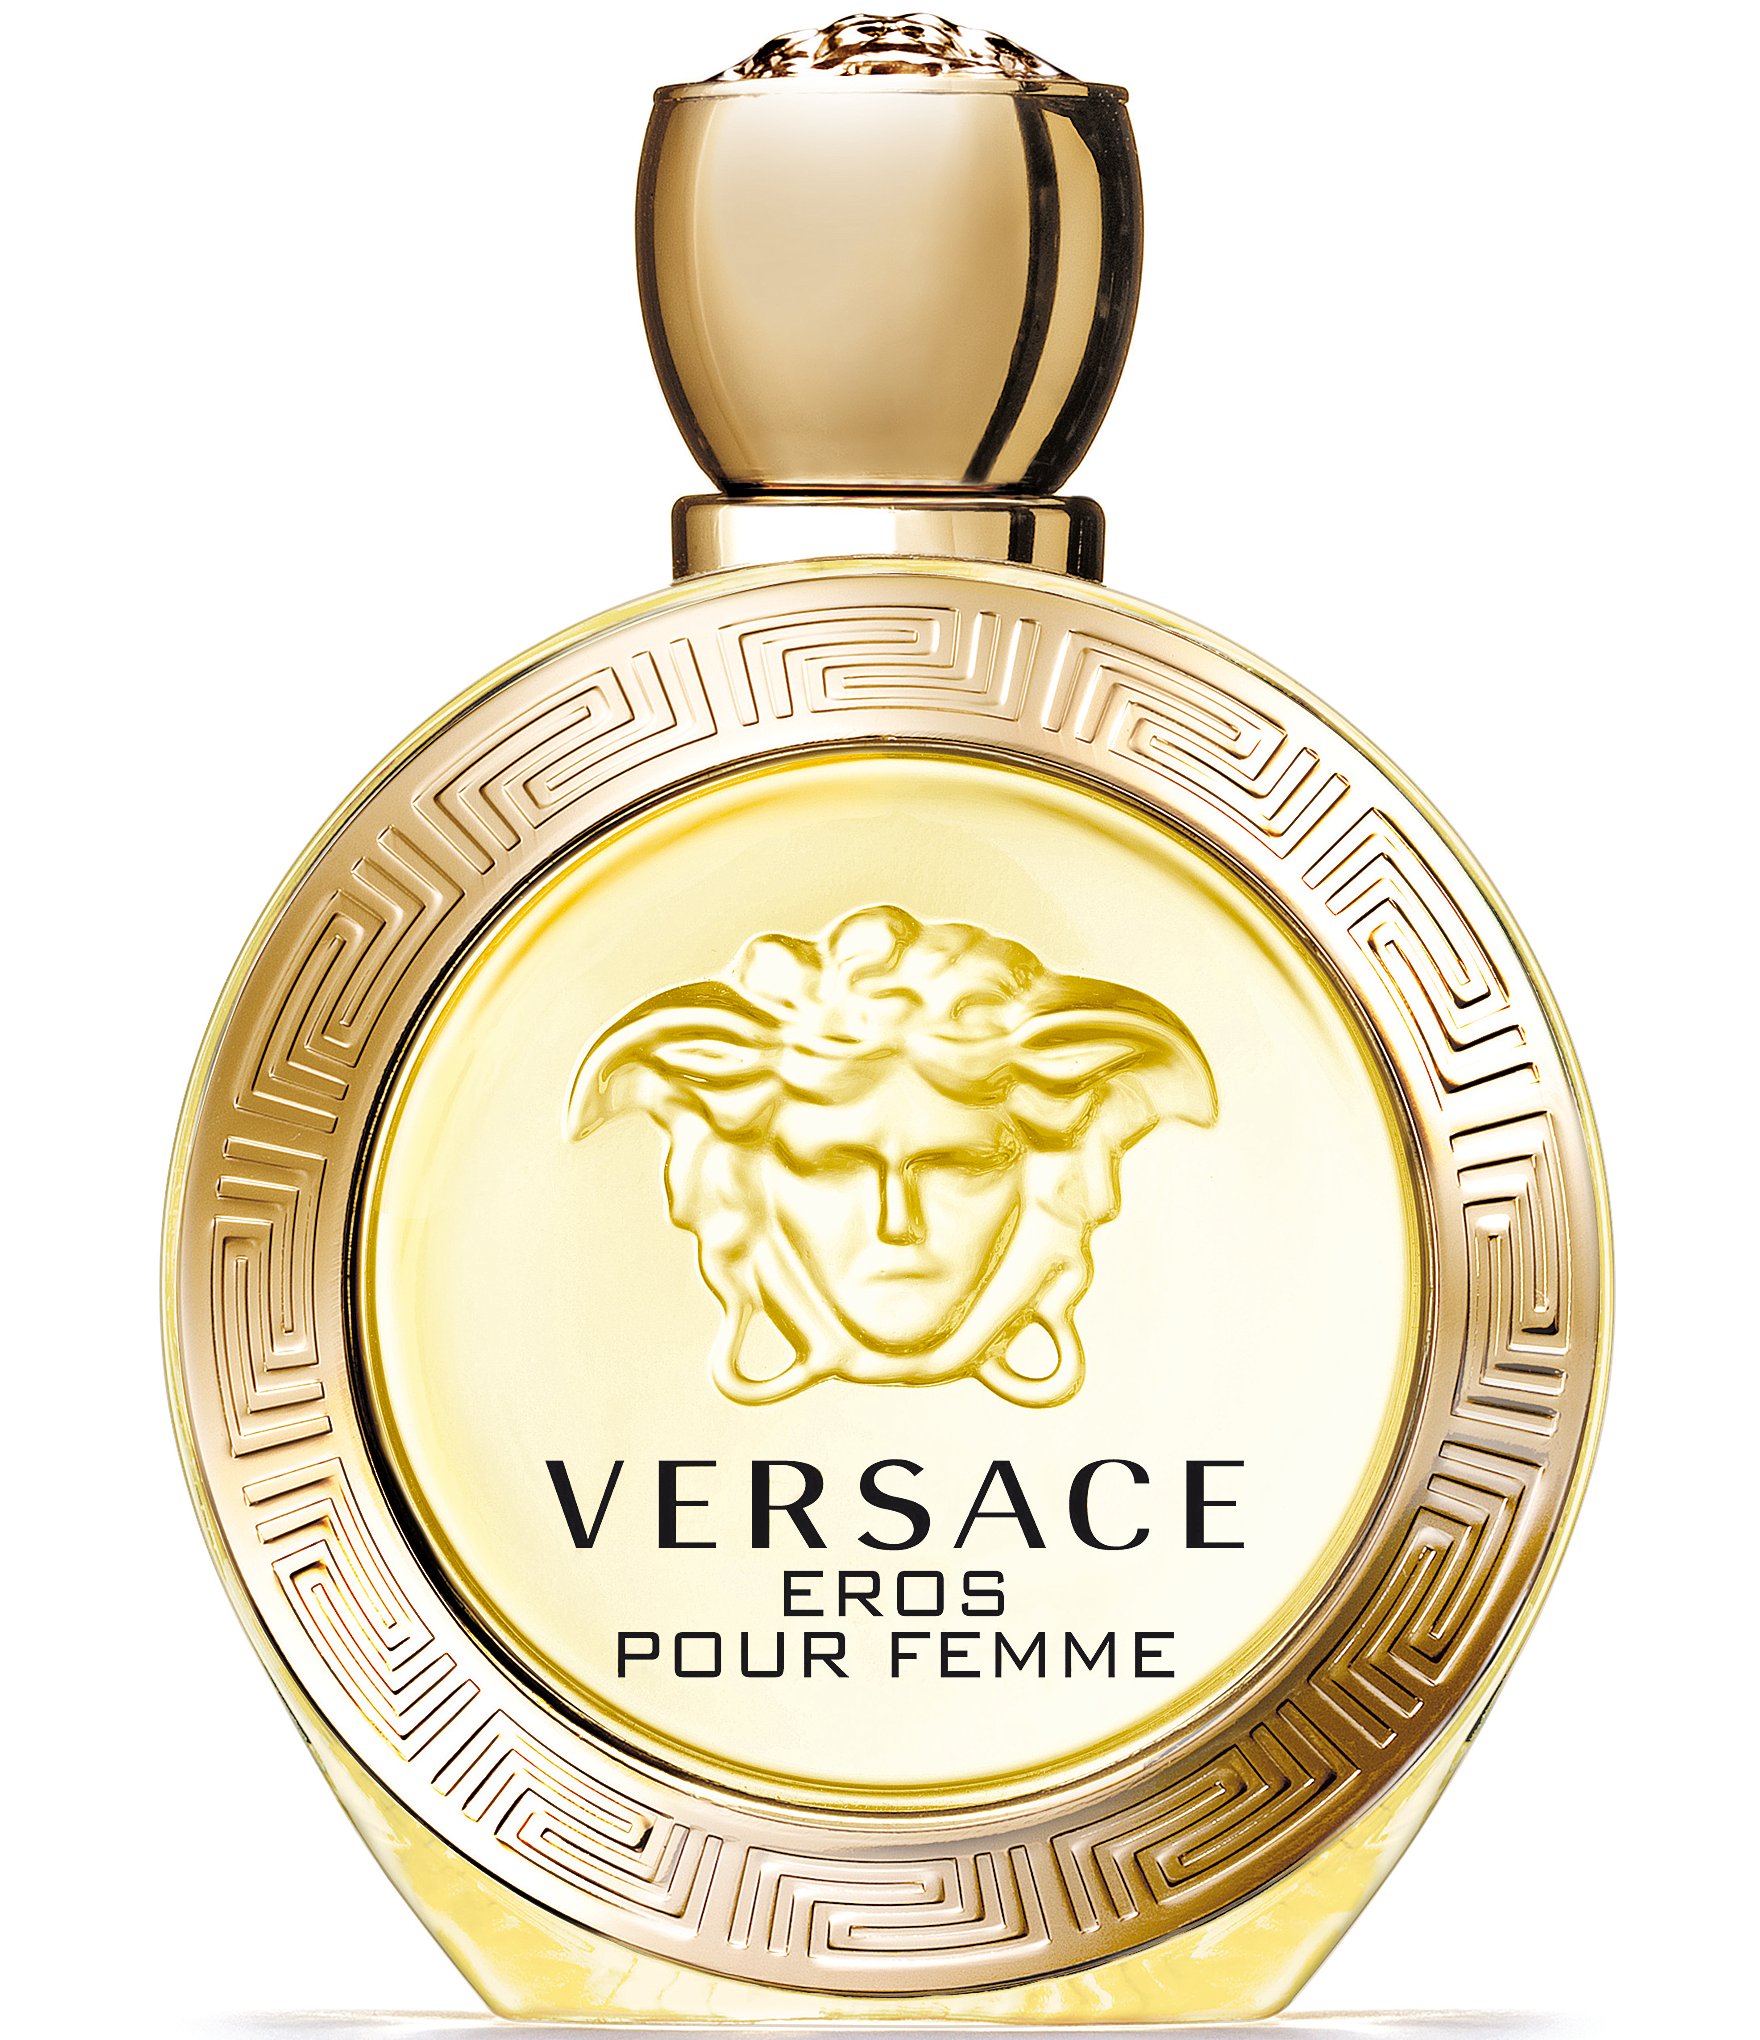 Аромат версаче женские описание. Versace Eros pour femme 100. Versace Eros pour femme 100ml. Versace Eros/Версаче Эрос/туалетная вода 100мл. Versace Eros pour femme (Versace).